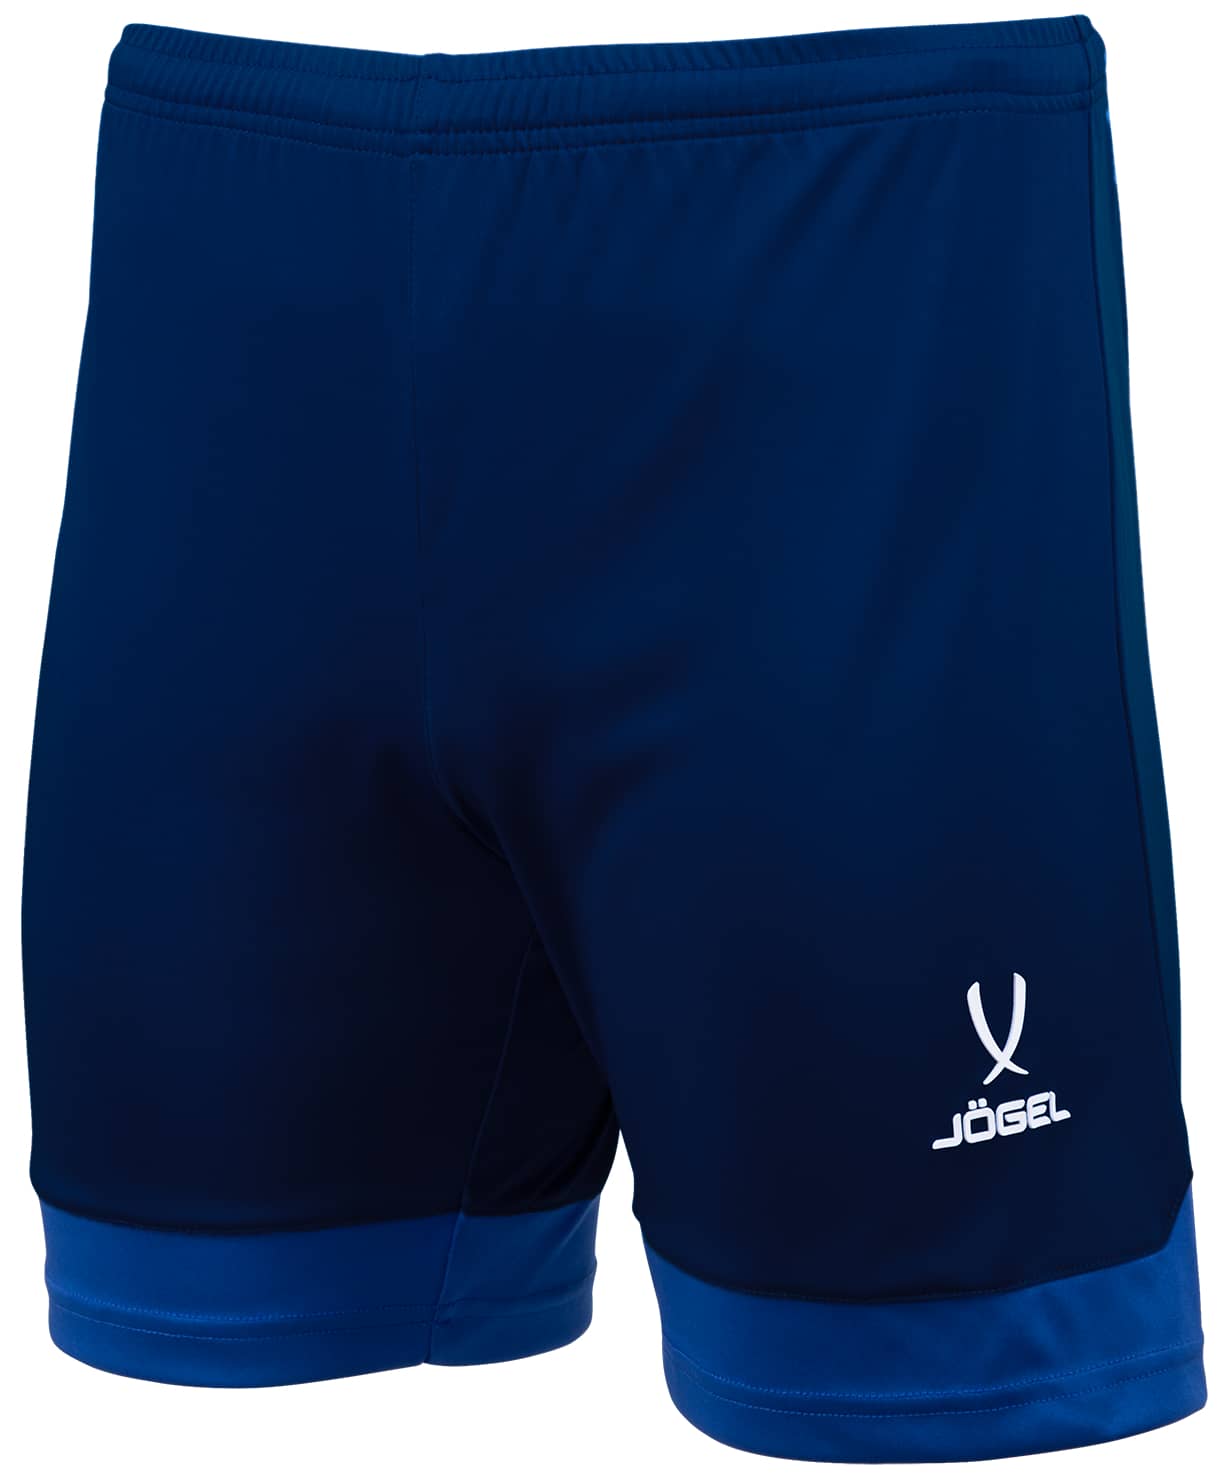 фото Шорты игровые jogel division performdry union shorts, темно-синий/синий/белый j?gel